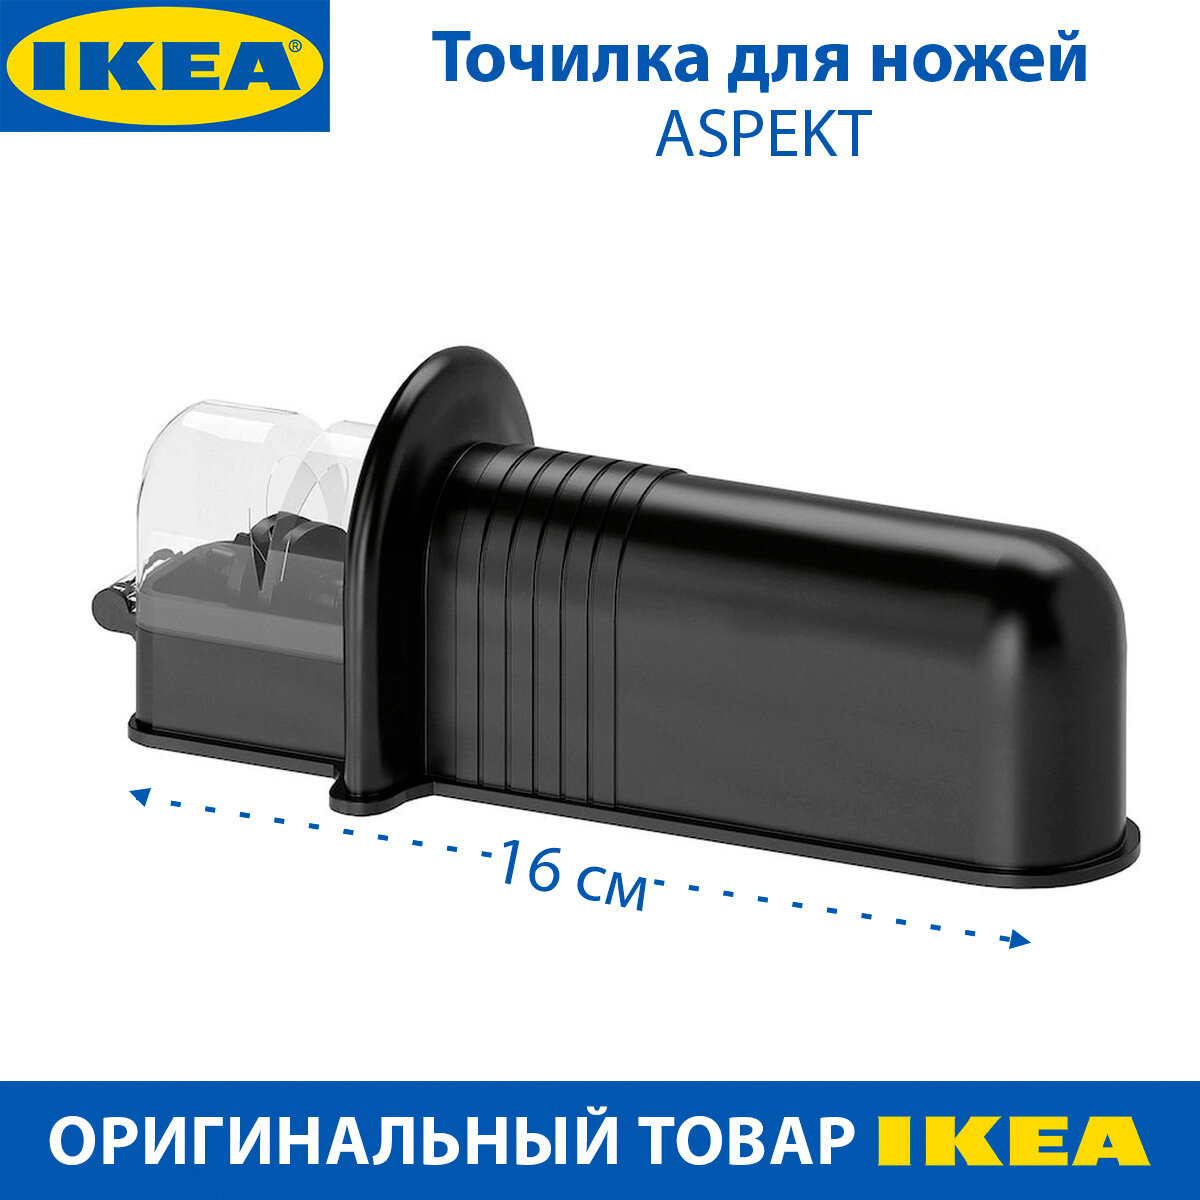 Точилка для ножей IKEA - ASPEKT (аспект), пластиковая, черная, 1 шт